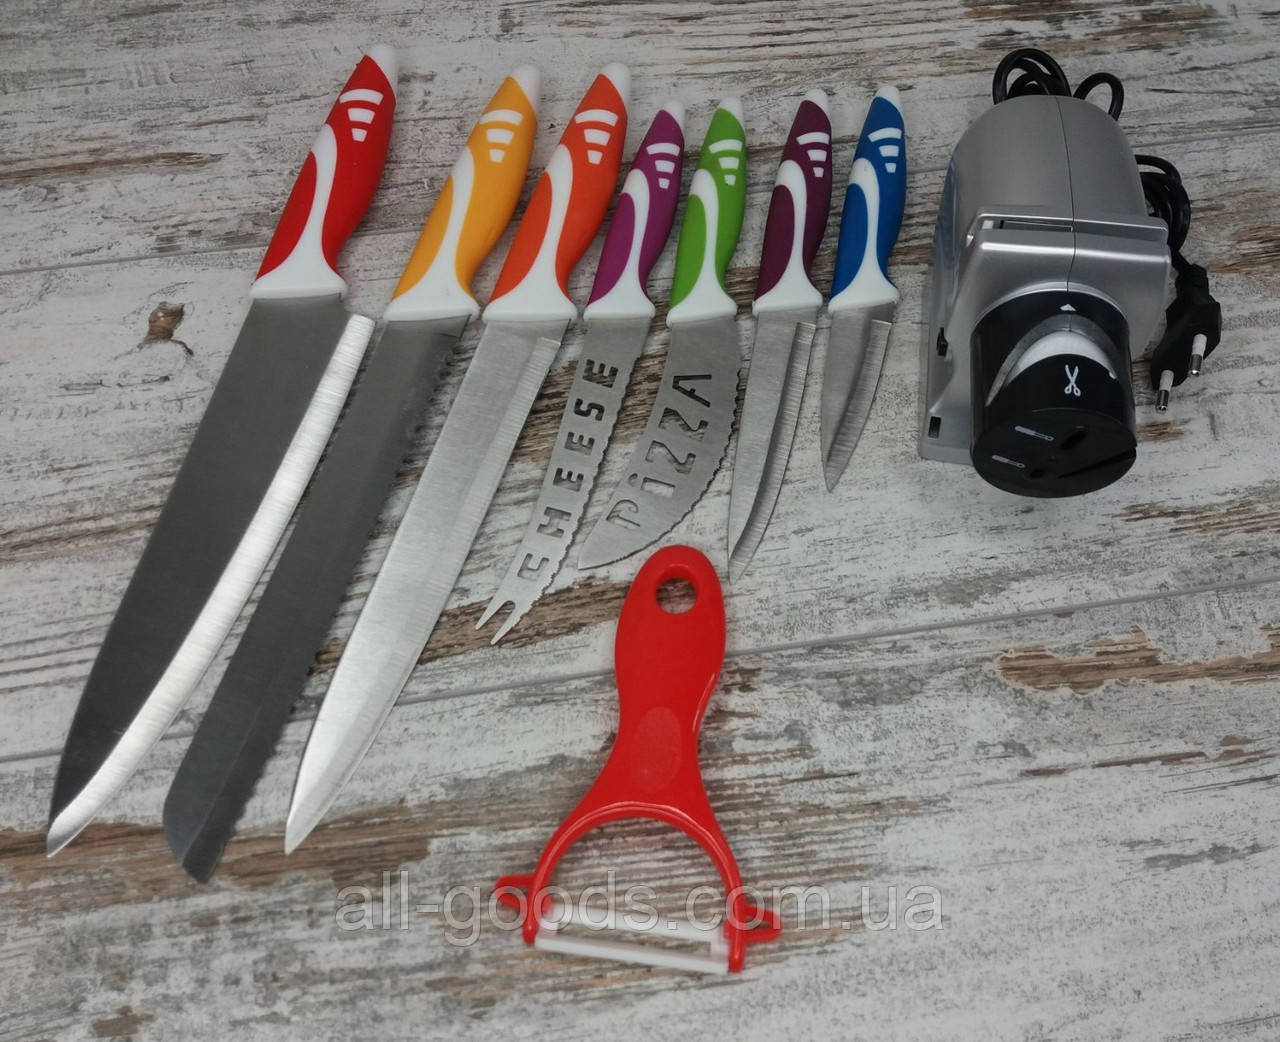 Электрическая точилка для заточки ножей Sharpener electric в комплекте с набором кухонных ножей  8 шт All